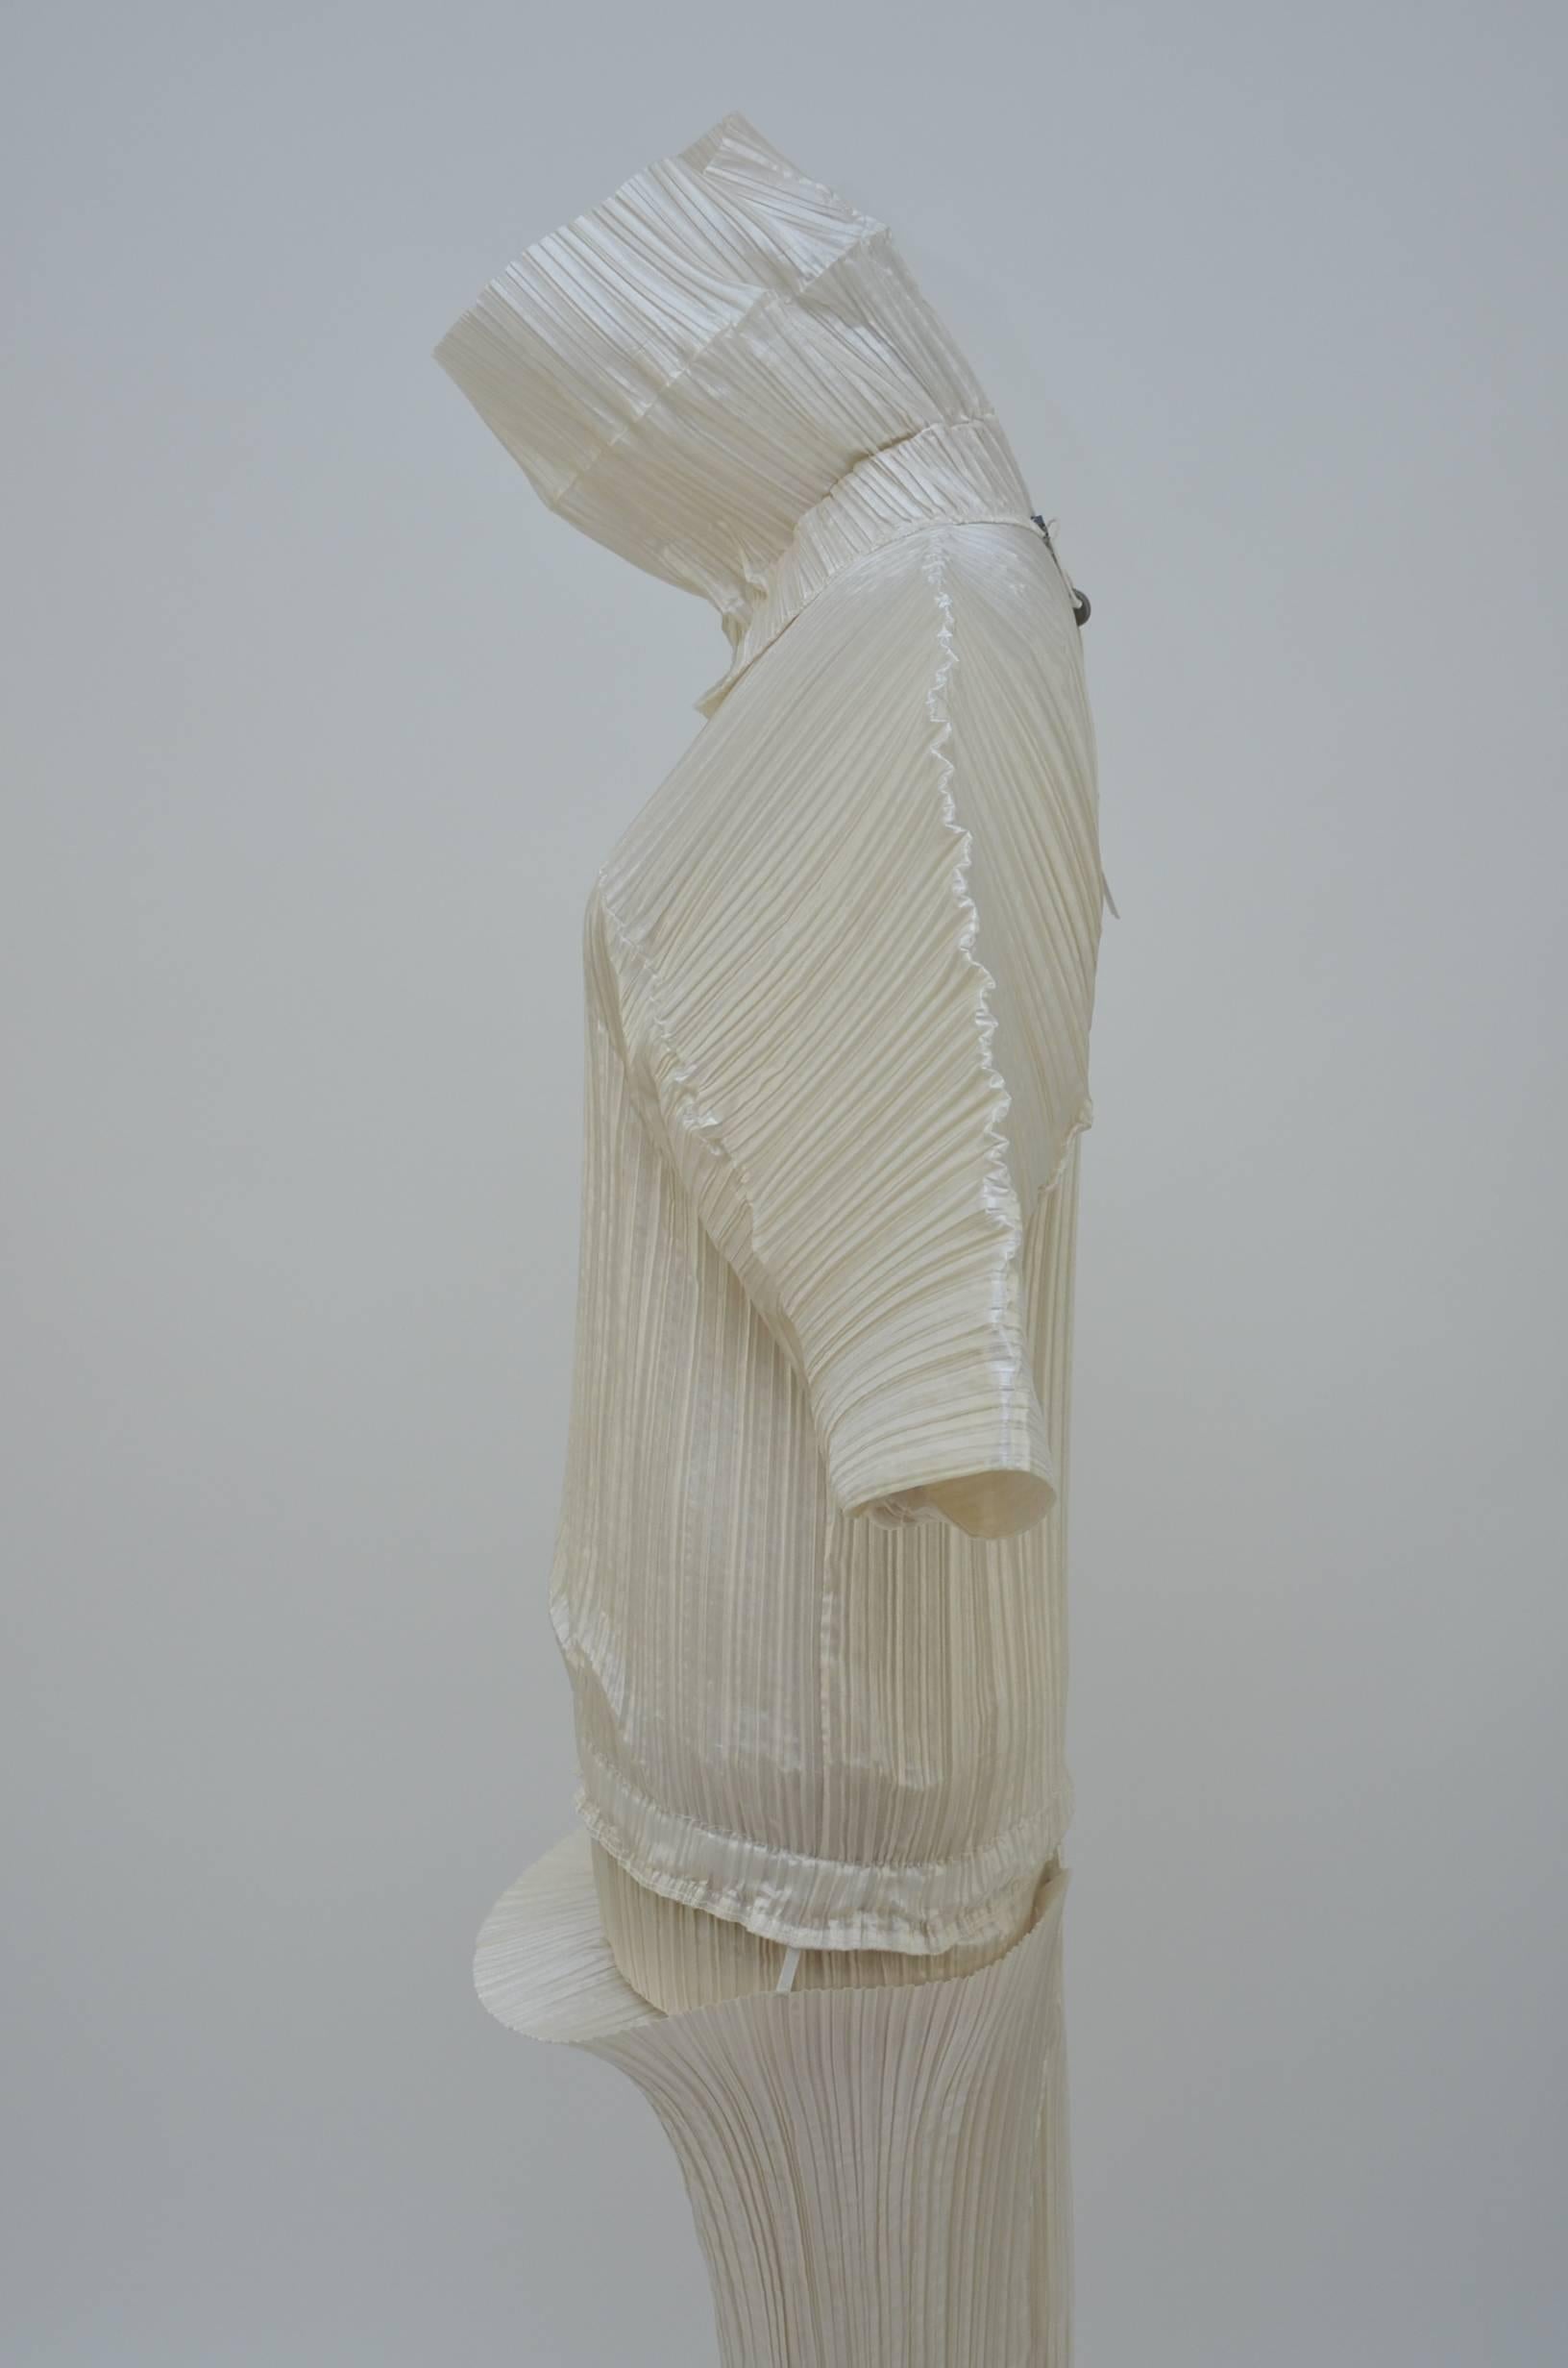 Issey Miyake Bamboo Collection Dress Runway  1989 NY Metropolitan Museum  1